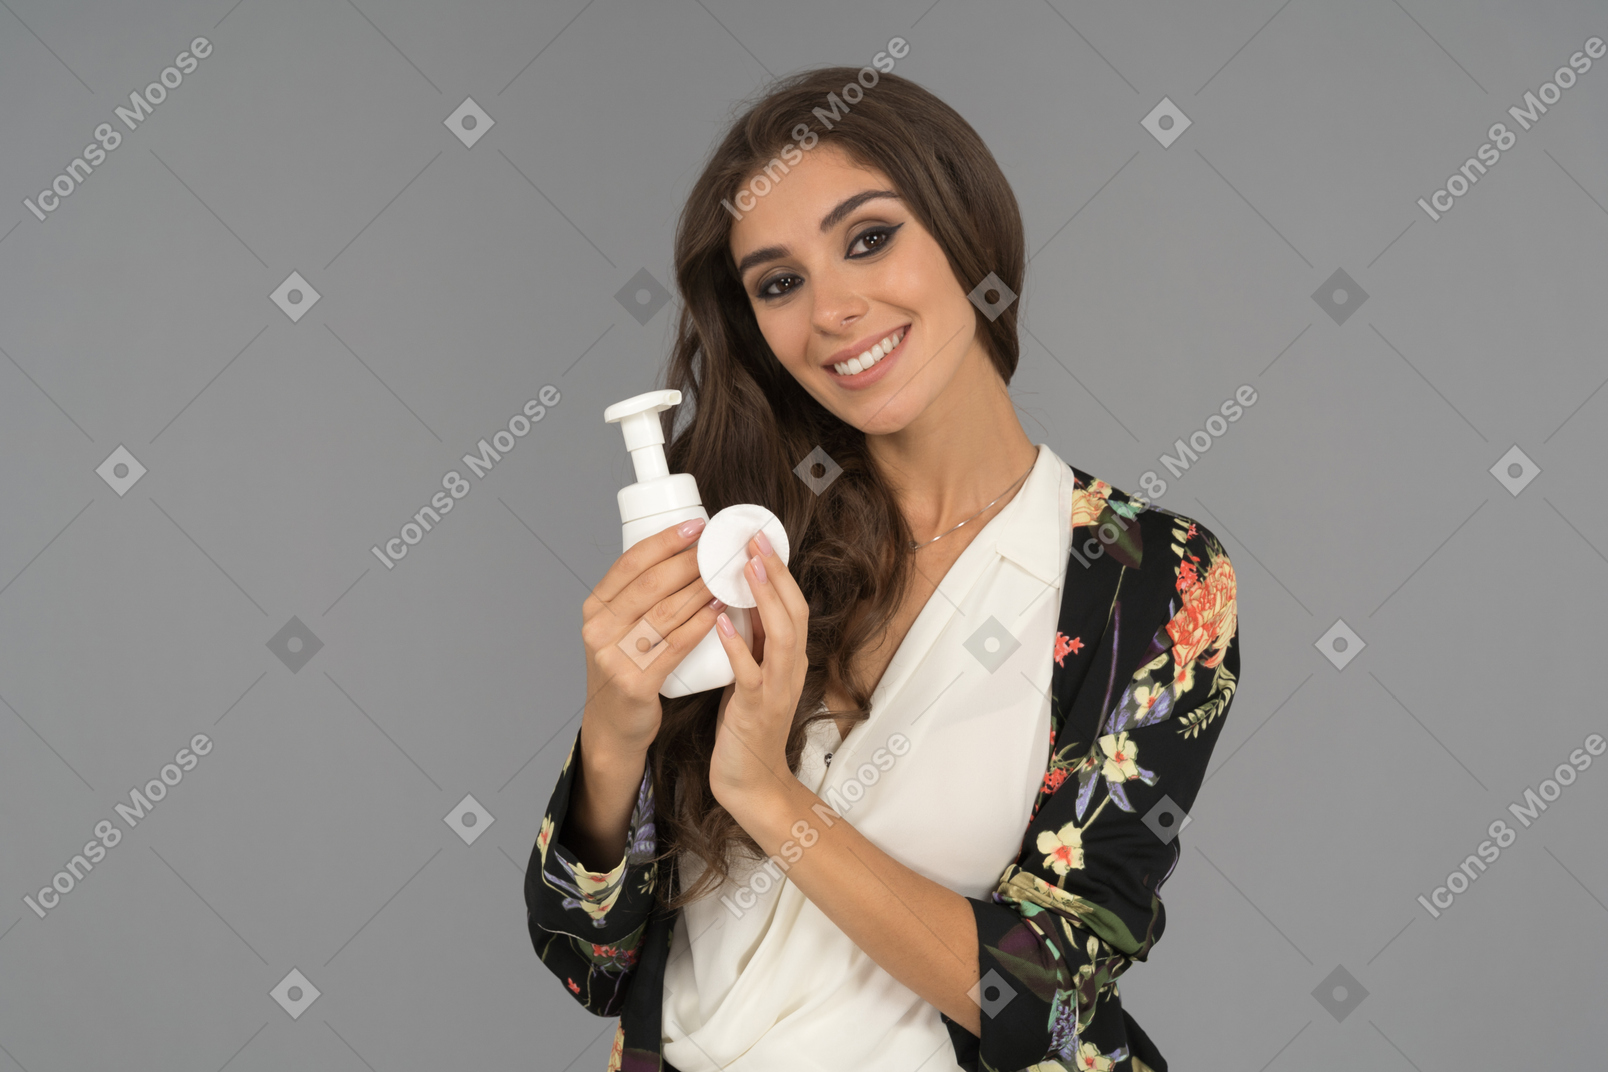 Uma mulher bonita com um sorriso radiante anunciando um novo produto de beleza